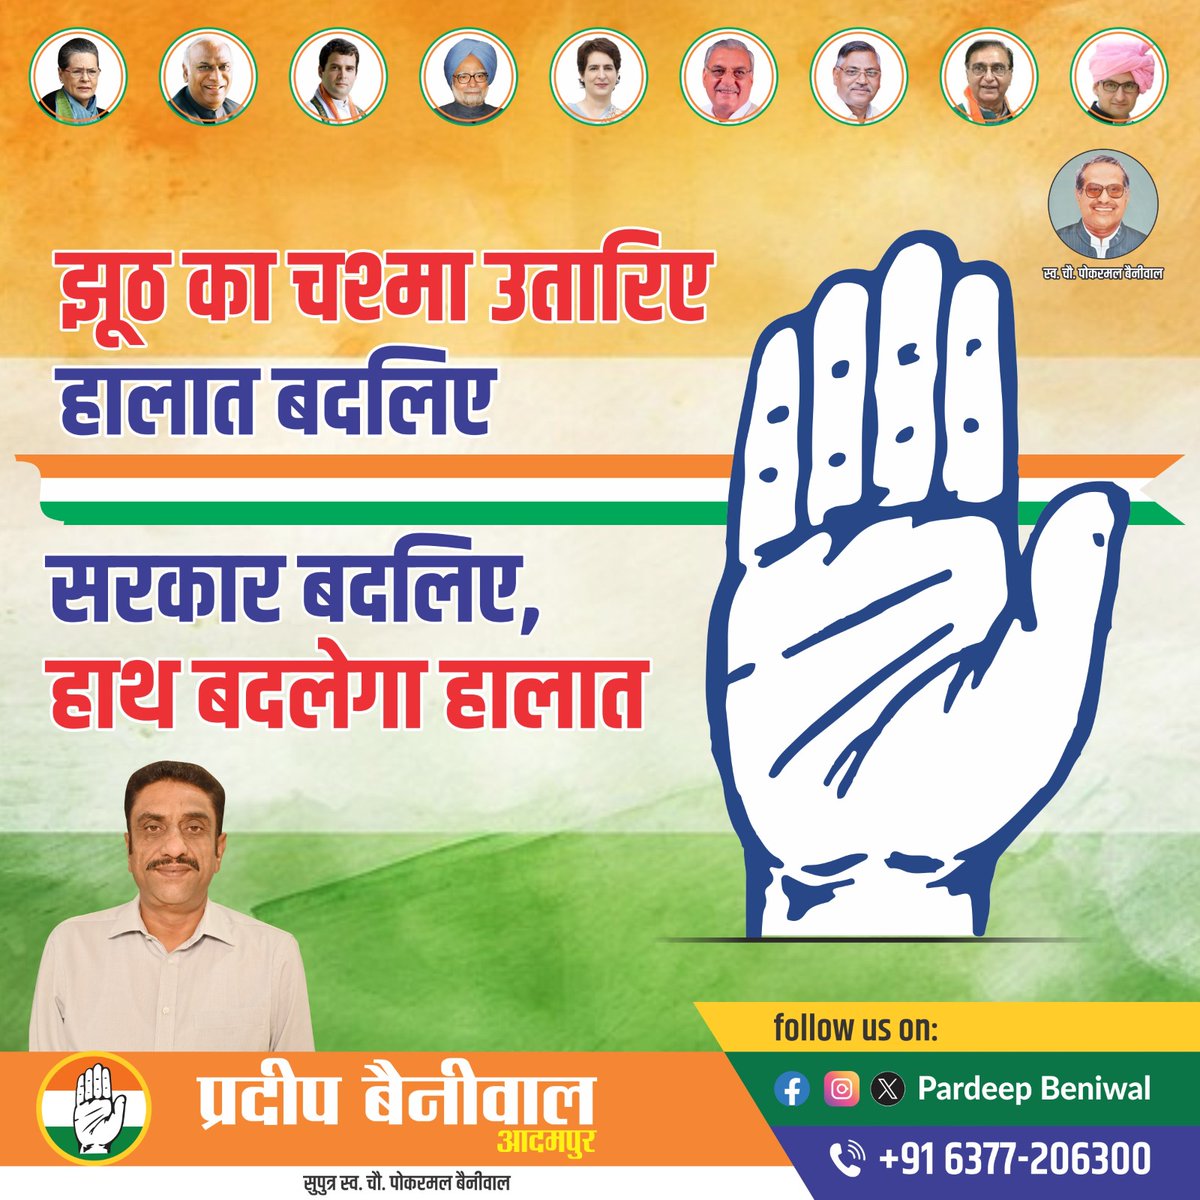 #hisarcity #hisar #Adampur #HaryanaCongress #IndianNationalCongress #congress #CongressParty #RahulGandhi #RahulGandhiVoiceOfIndia